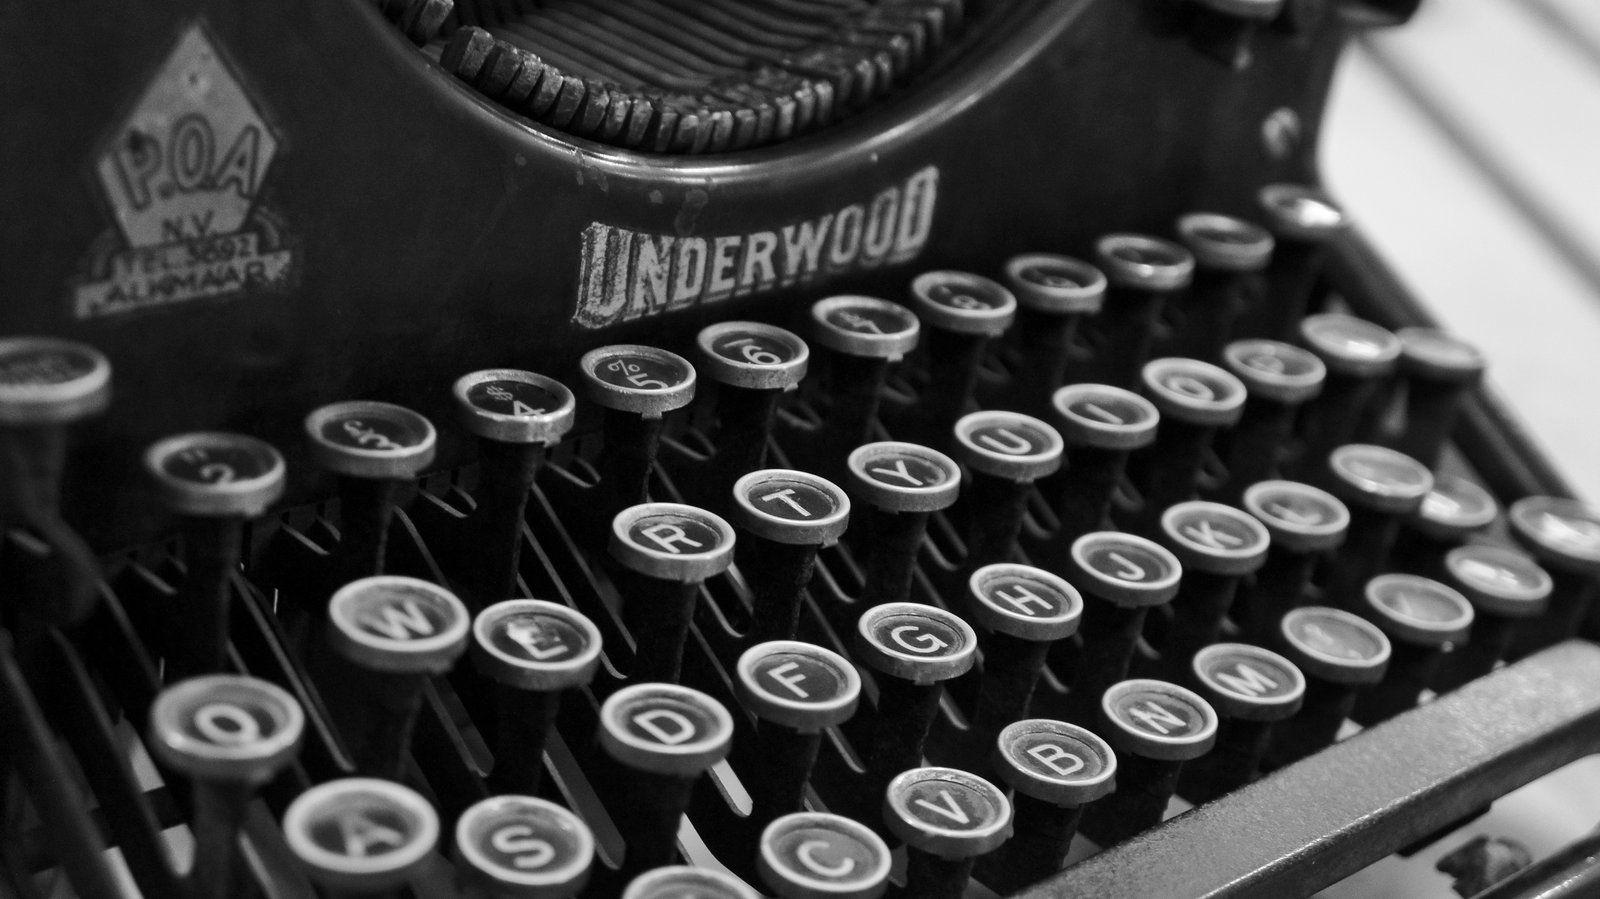 Typewriter Wallpaper, High Quality Picture of Typewriter